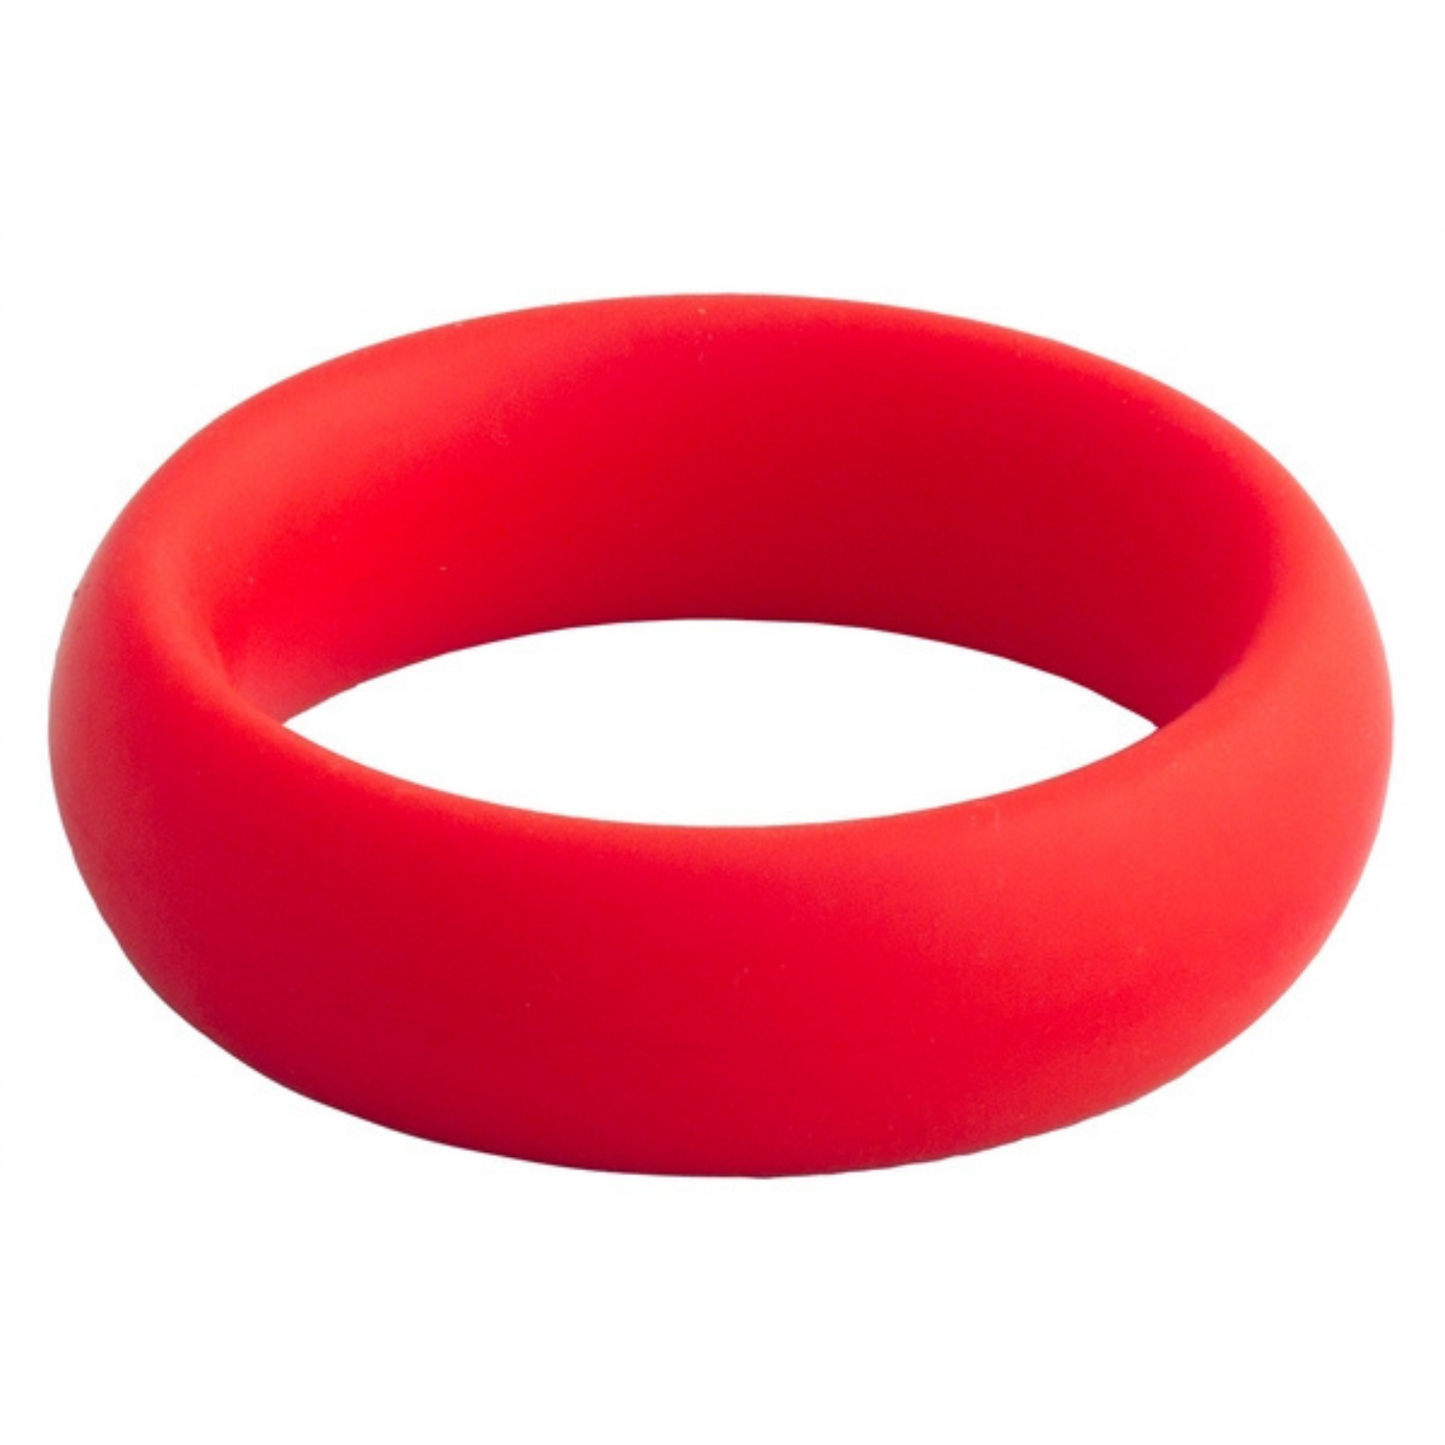 Rode donut cock ring met een diameter van 40 mm van Mister B, te koop bij Flavourez.